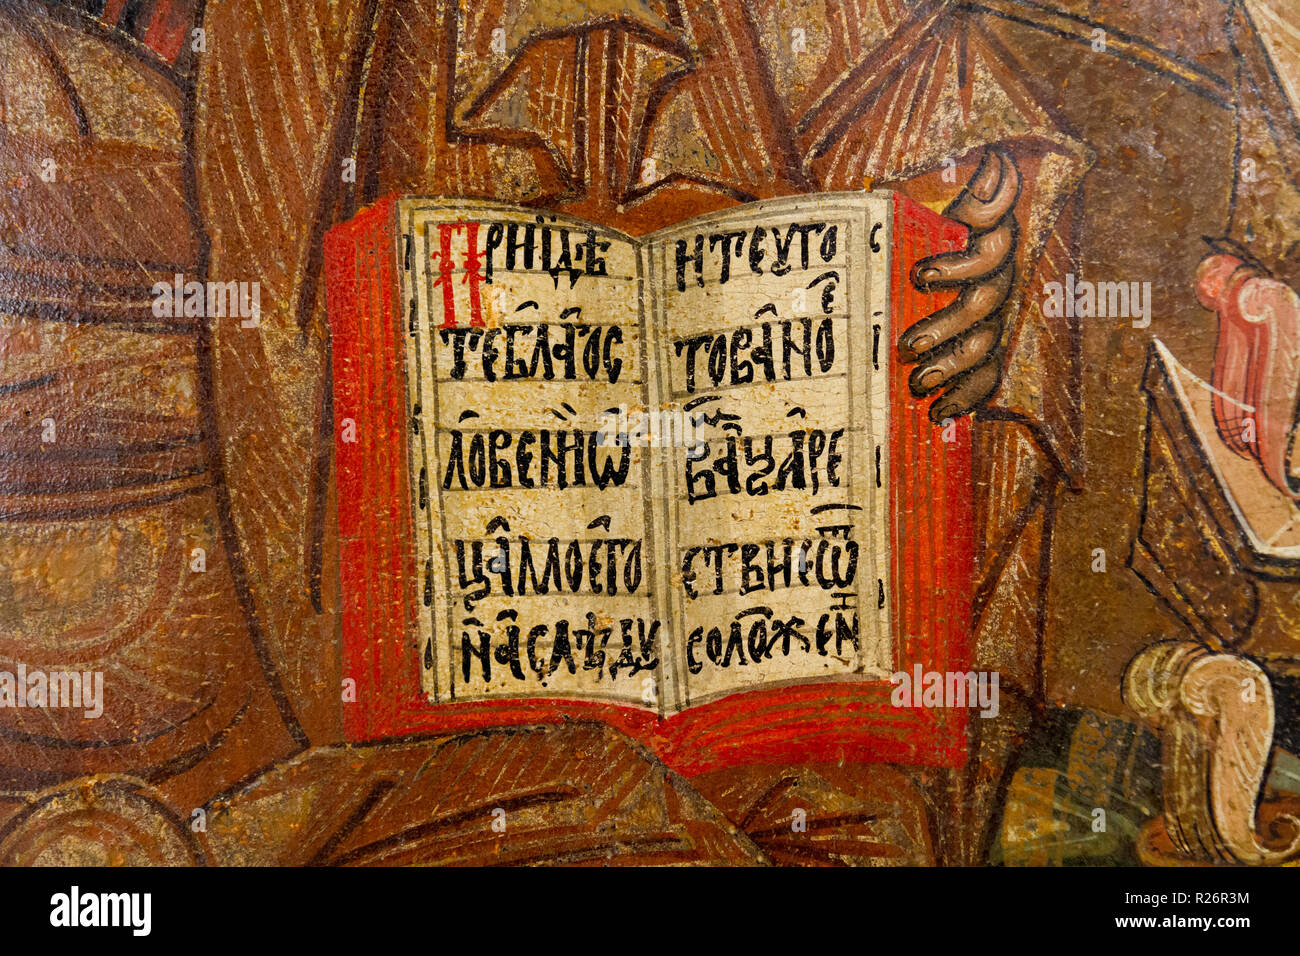 Una Bibbia aperta con una citazione in greco delle Scritture. Gesù Cristo è la holding th libro. Foto Stock